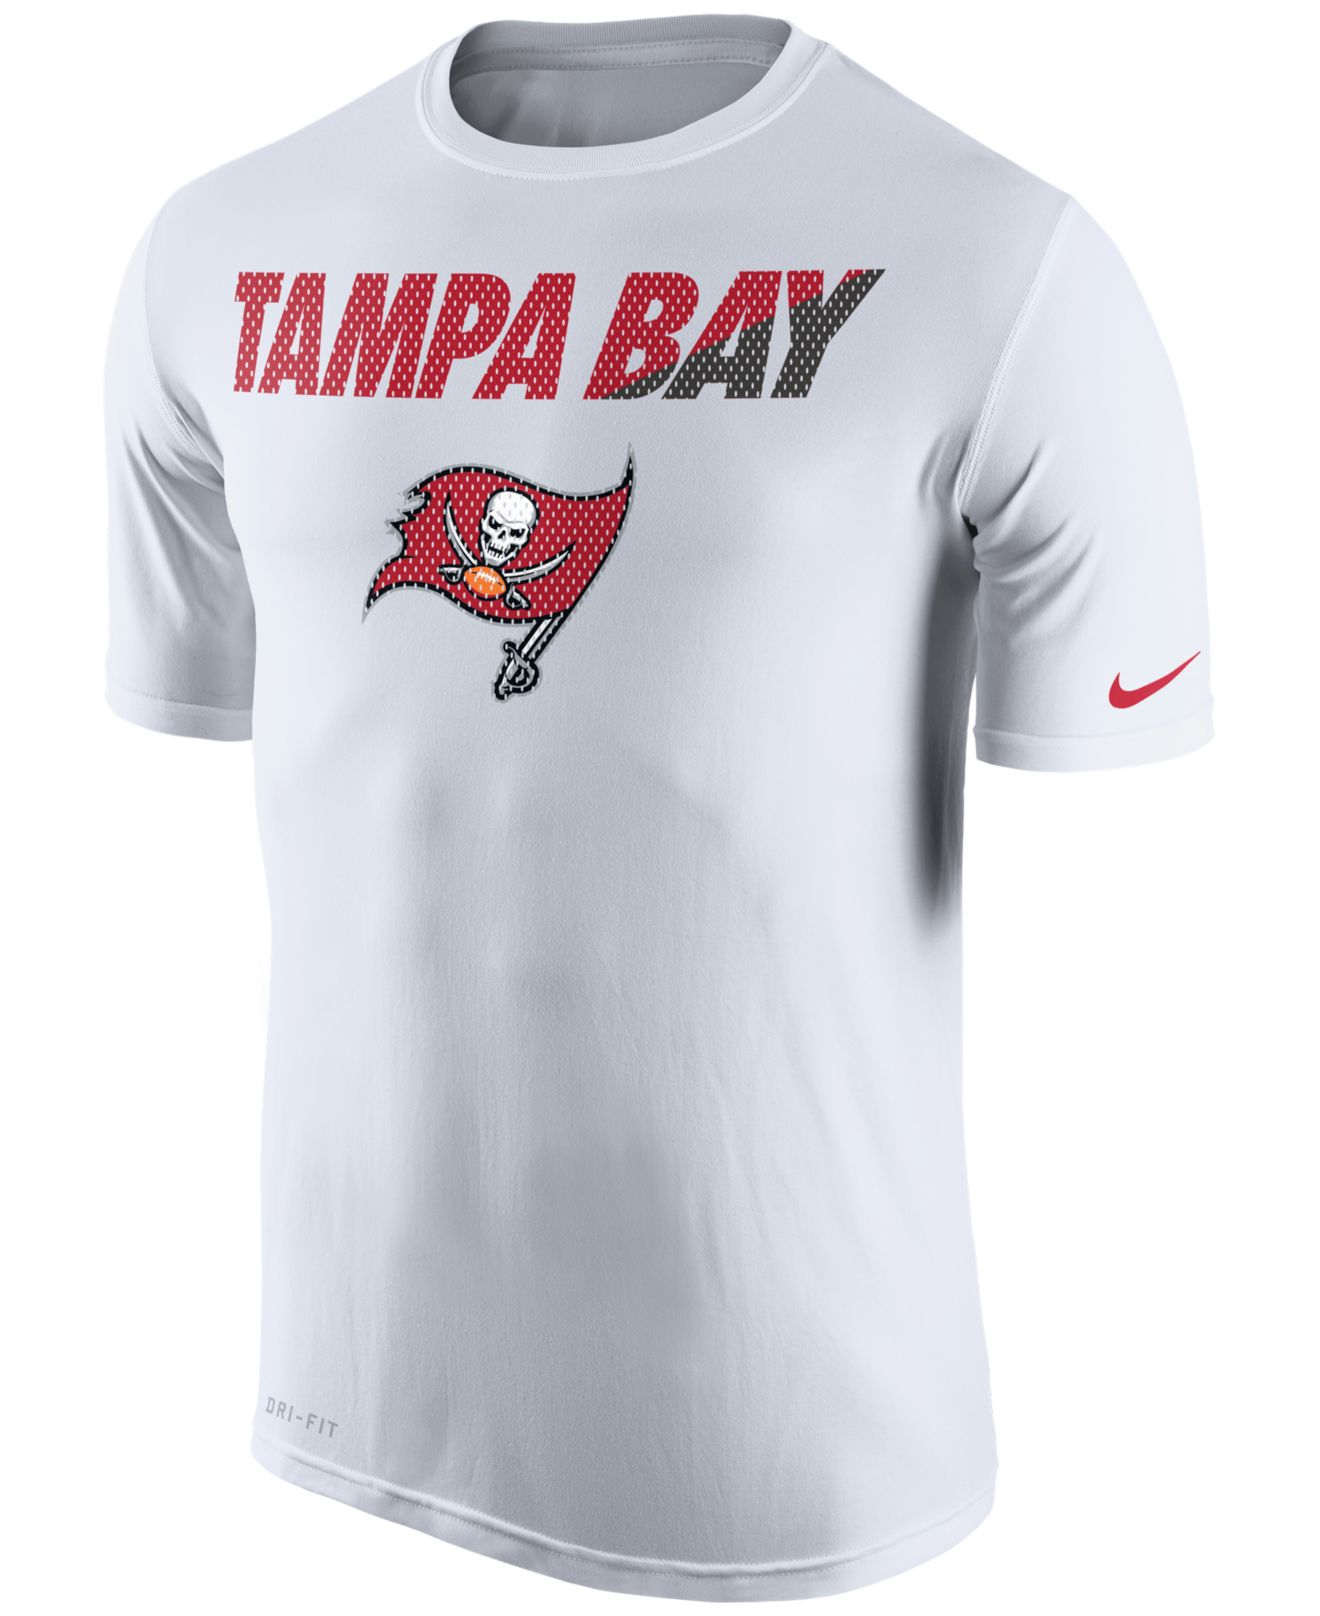 Lyst - Nike Men's Tampa Bay Buccaneers Legend Staff Practice T-shirt in ...